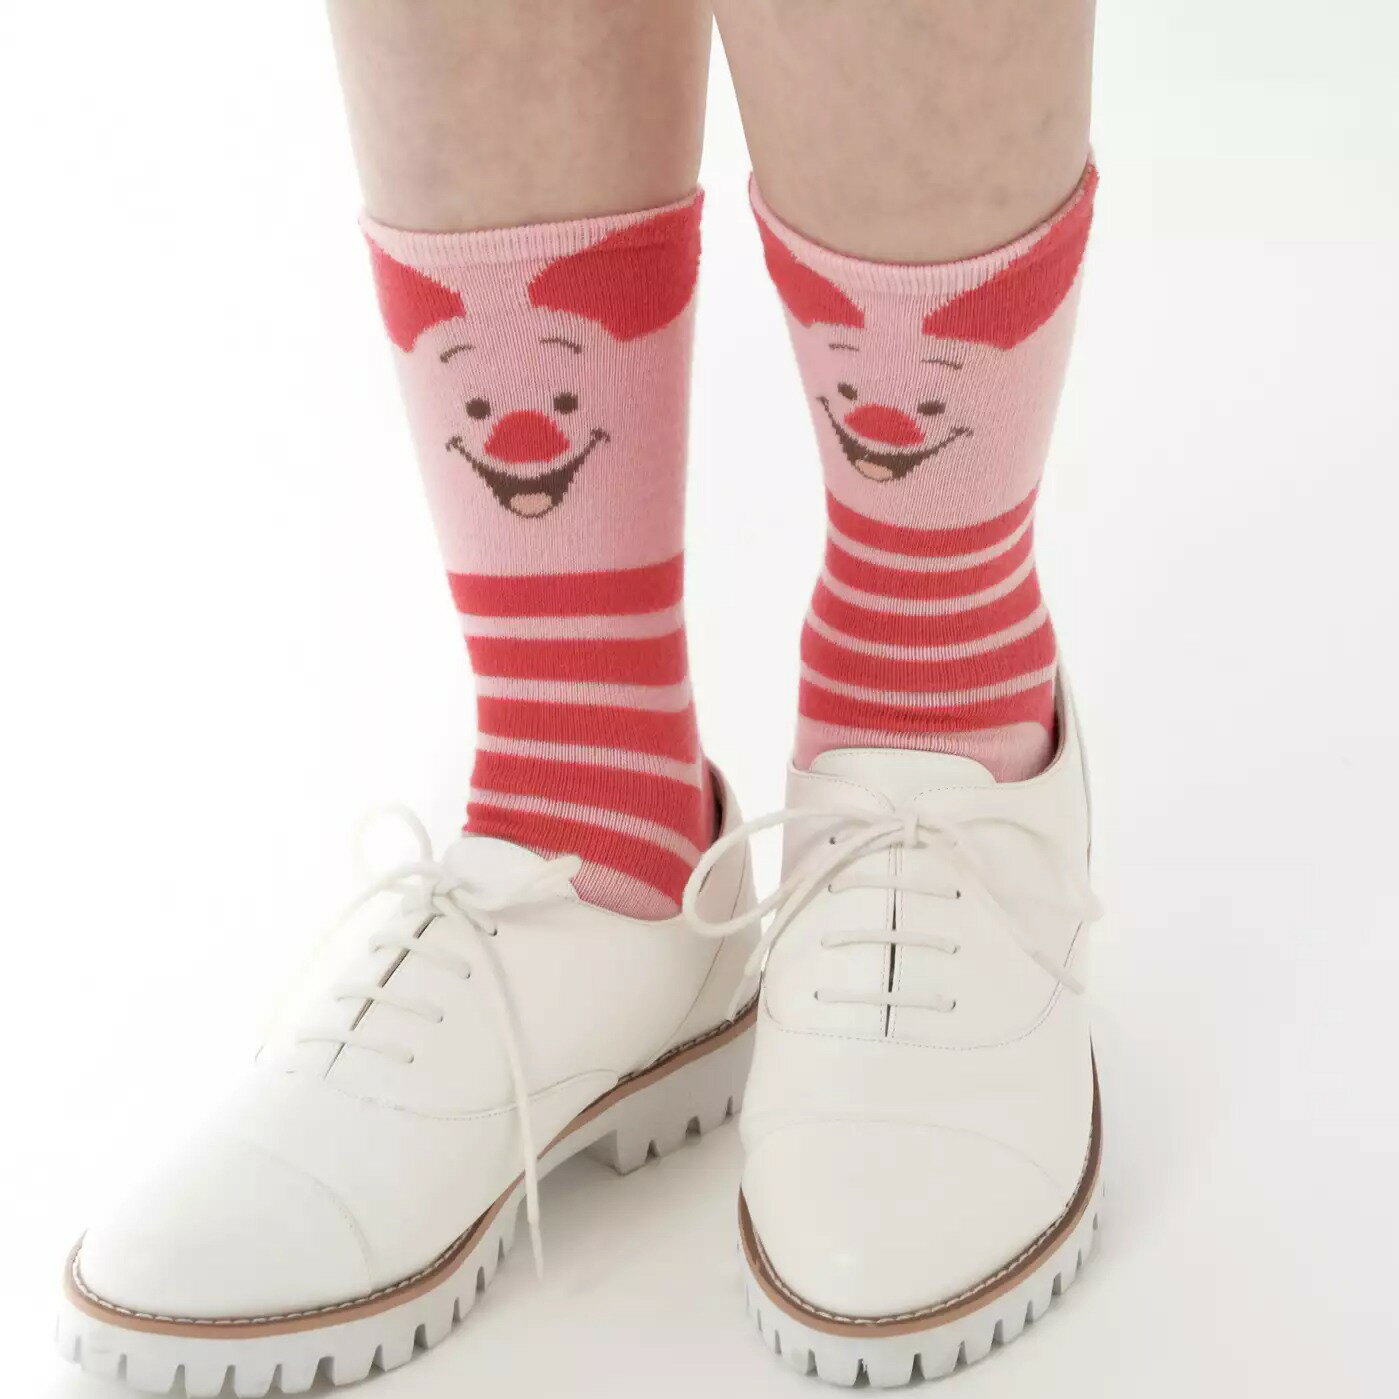 真愛日本 迪士尼 小熊維尼 POOH 小豬 中筒襪 襪子 卡通襪 運動襪 襪 學生襪 迪士尼專賣店帶回